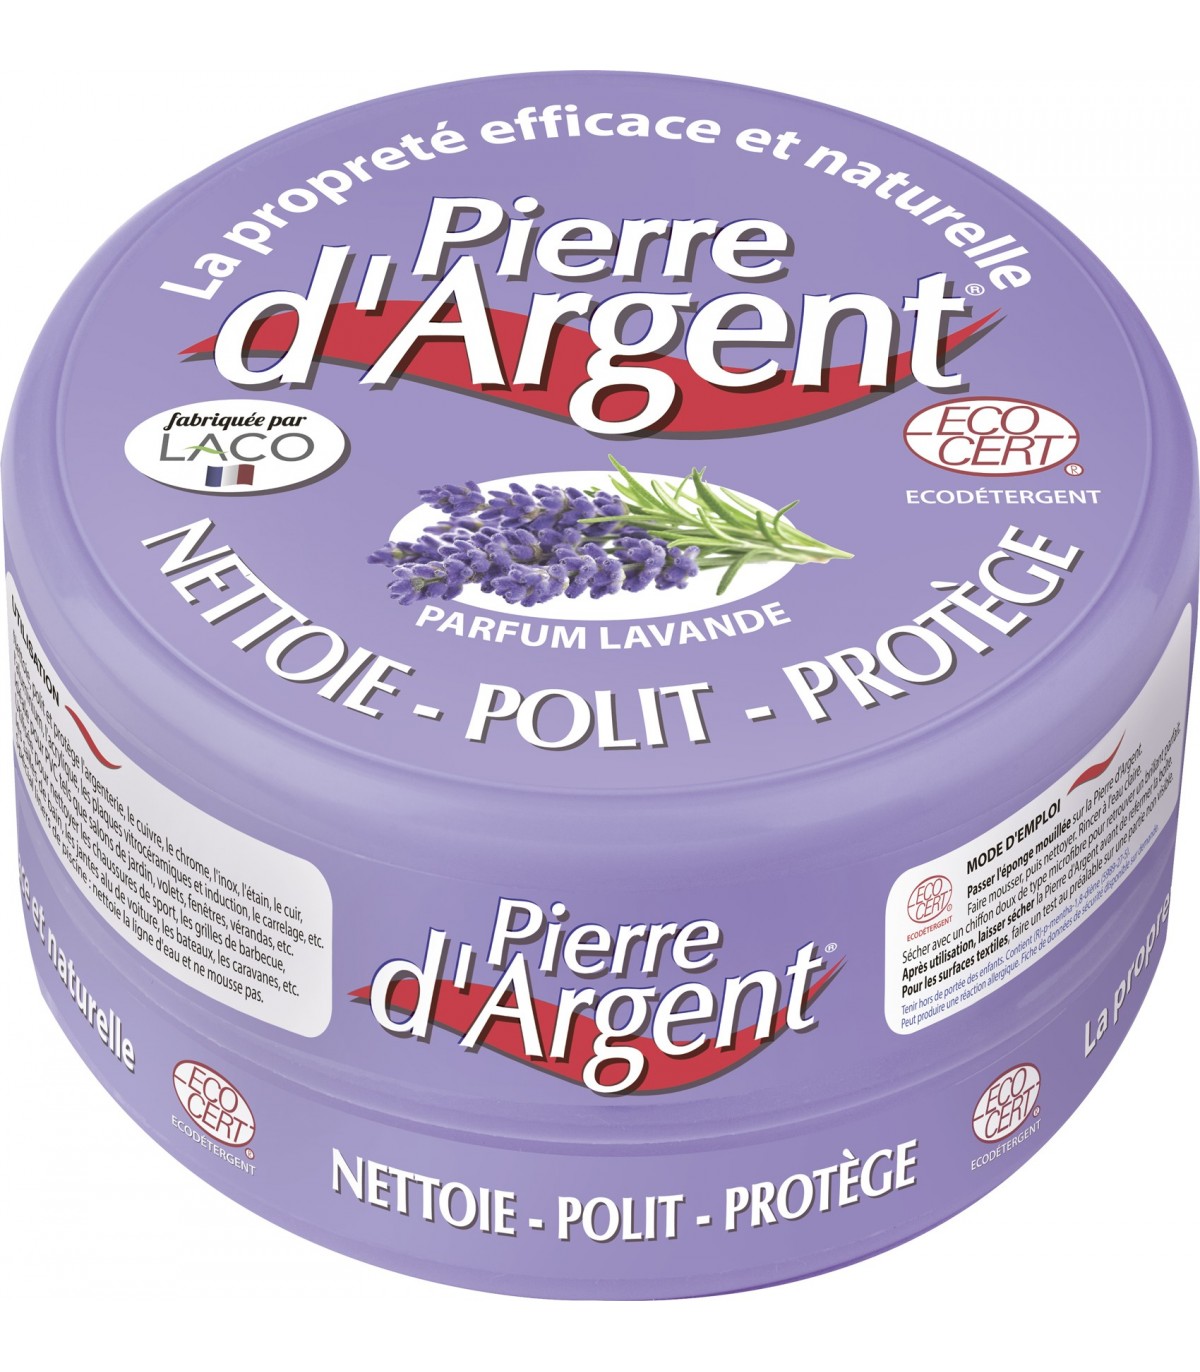 CALICOSY PIERRE D'ARGENT® 300GR PARFUM LAVANDE + EPONGE pas cher 